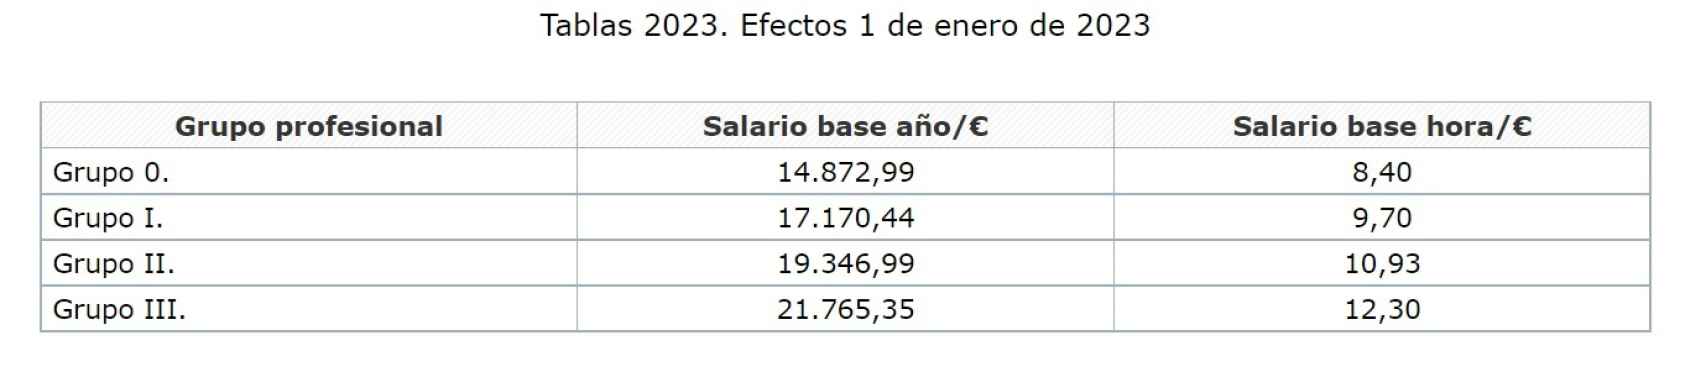 Tabla salarial de Primark en 2023. Fuente: BOE.